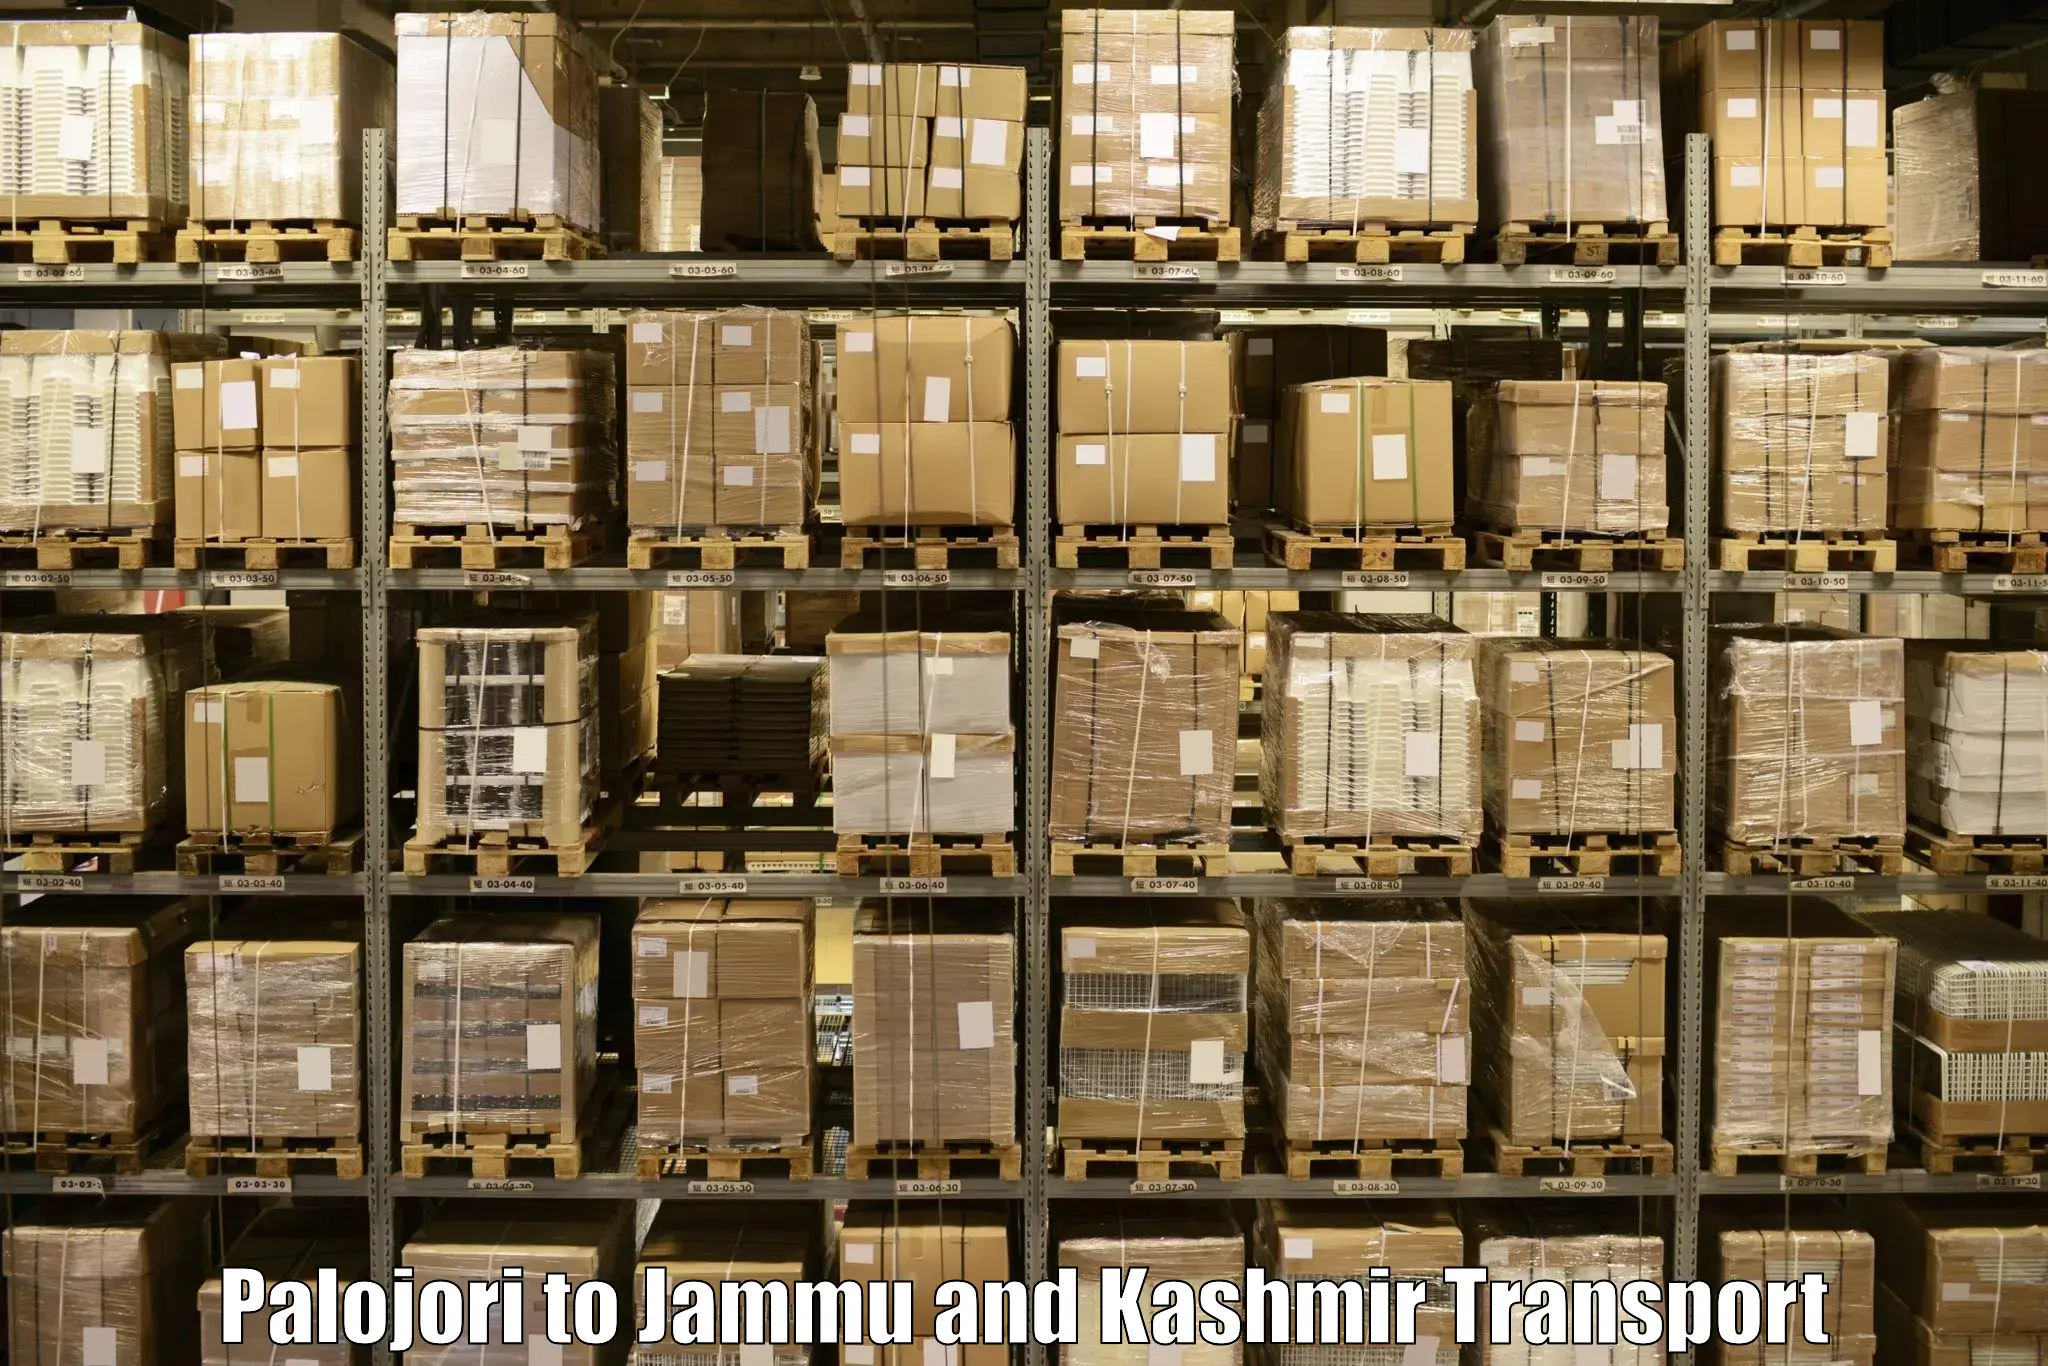 Delivery service Palojori to IIT Jammu